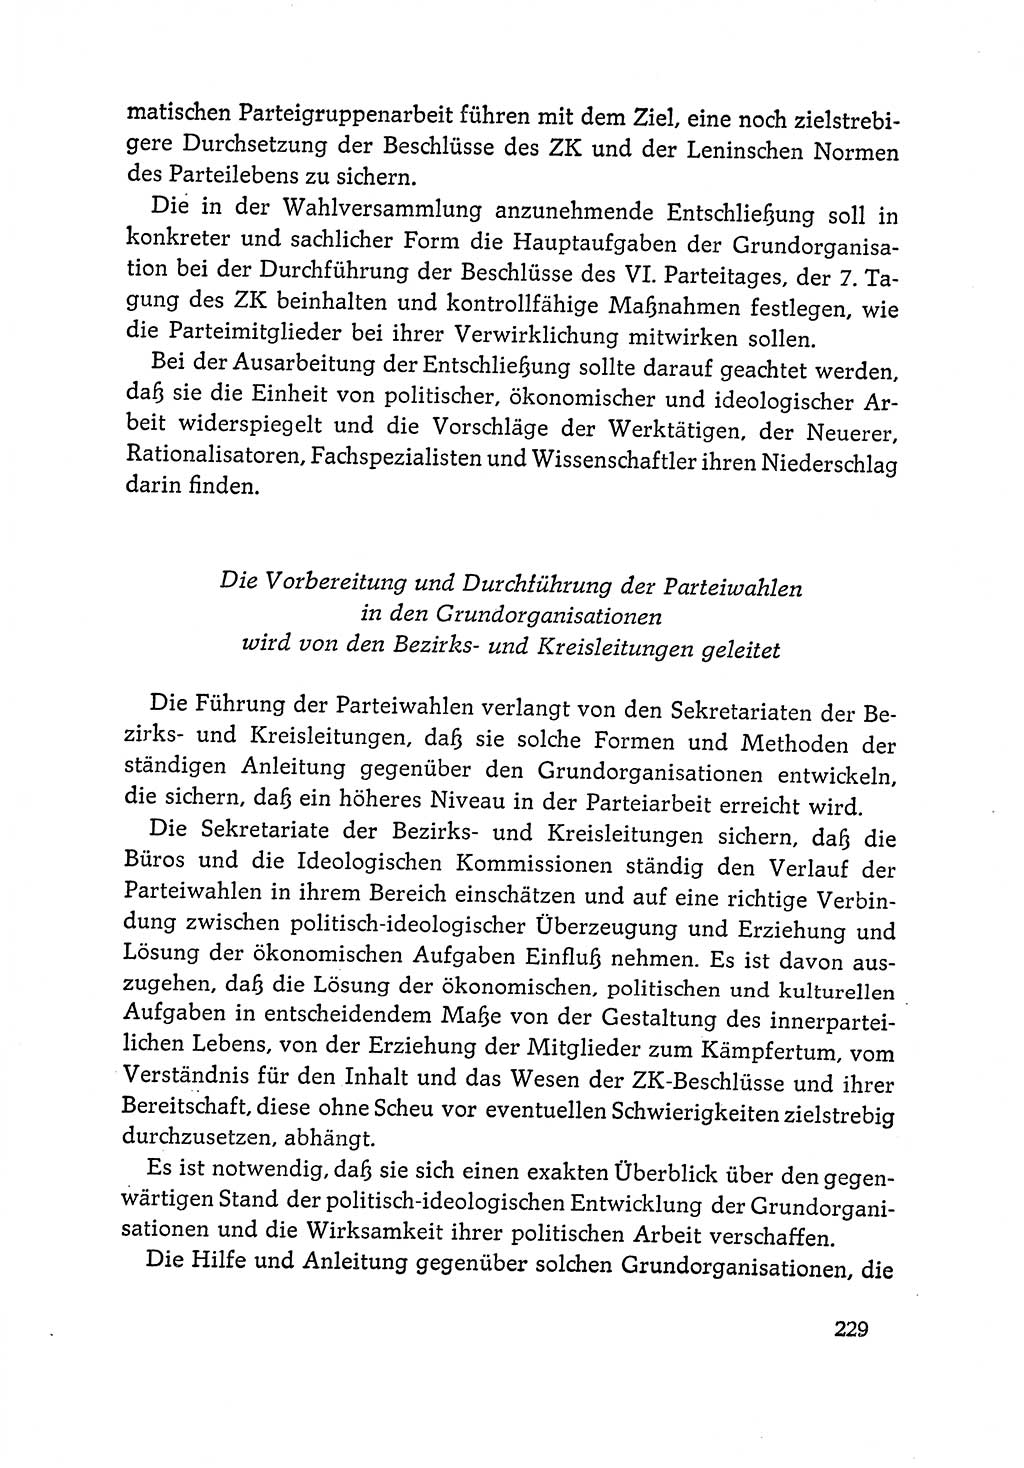 Dokumente der Sozialistischen Einheitspartei Deutschlands (SED) [Deutsche Demokratische Republik (DDR)] 1964-1965, Seite 229 (Dok. SED DDR 1964-1965, S. 229)